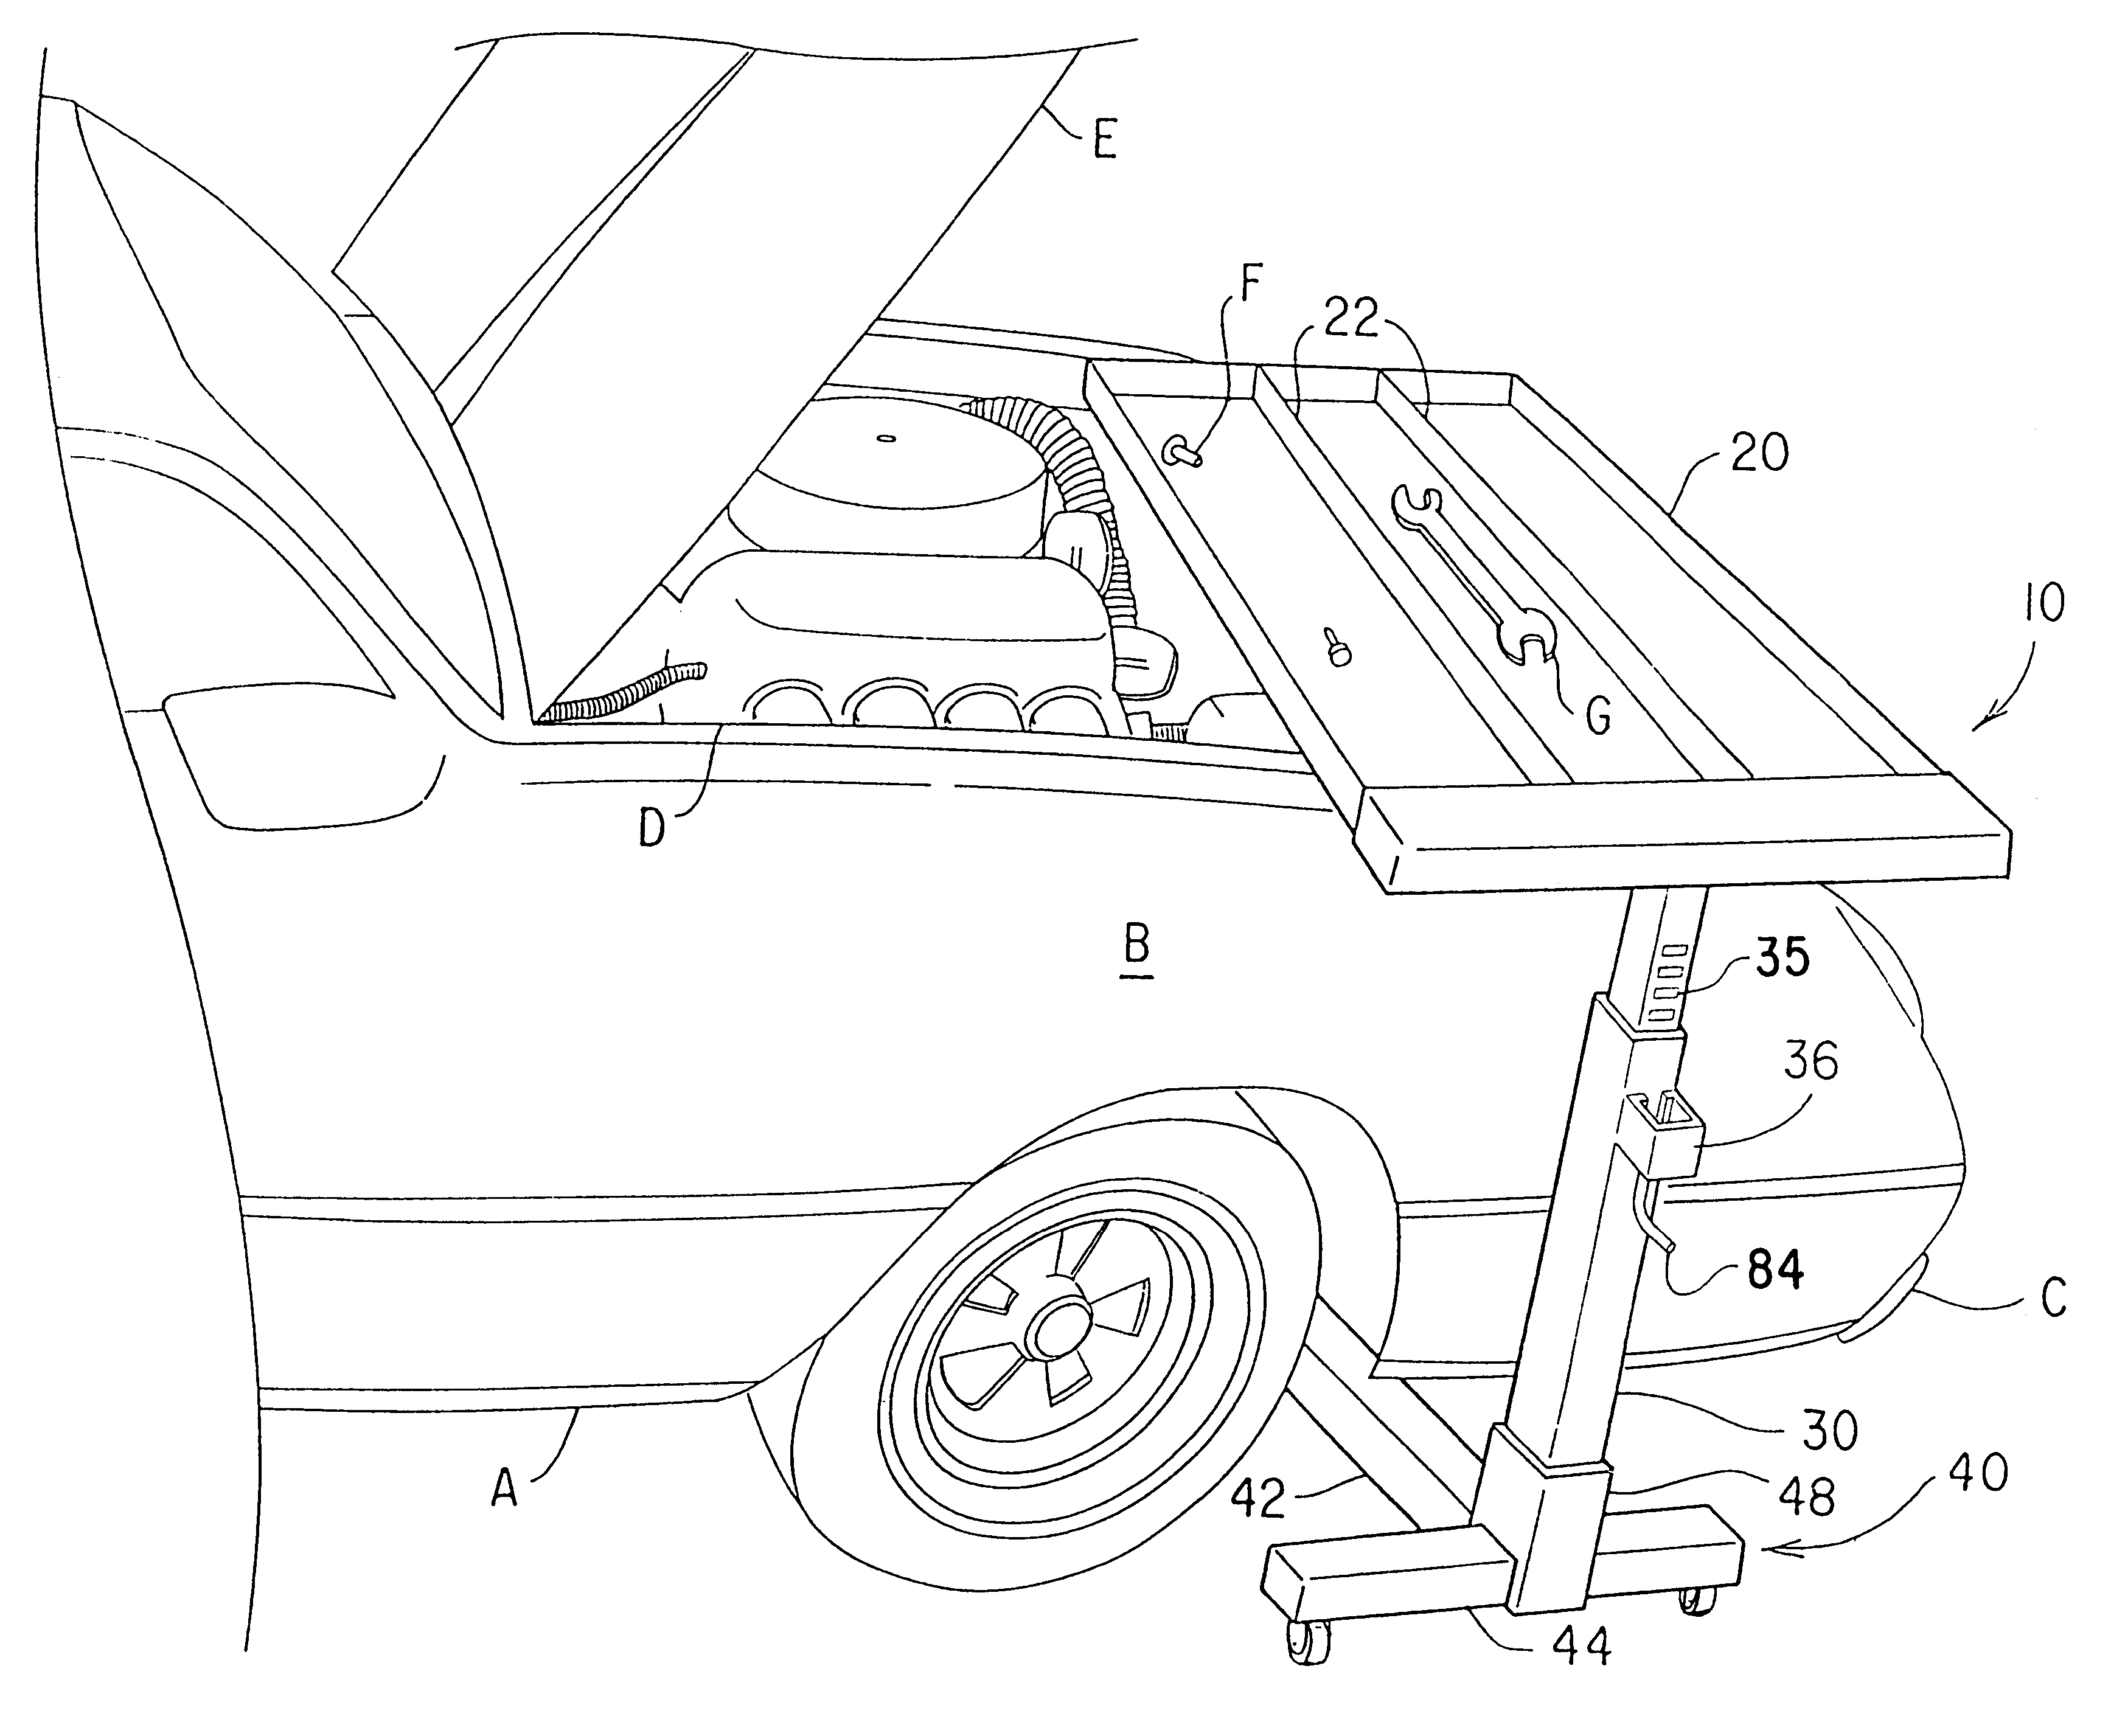 Vehicle tool tray